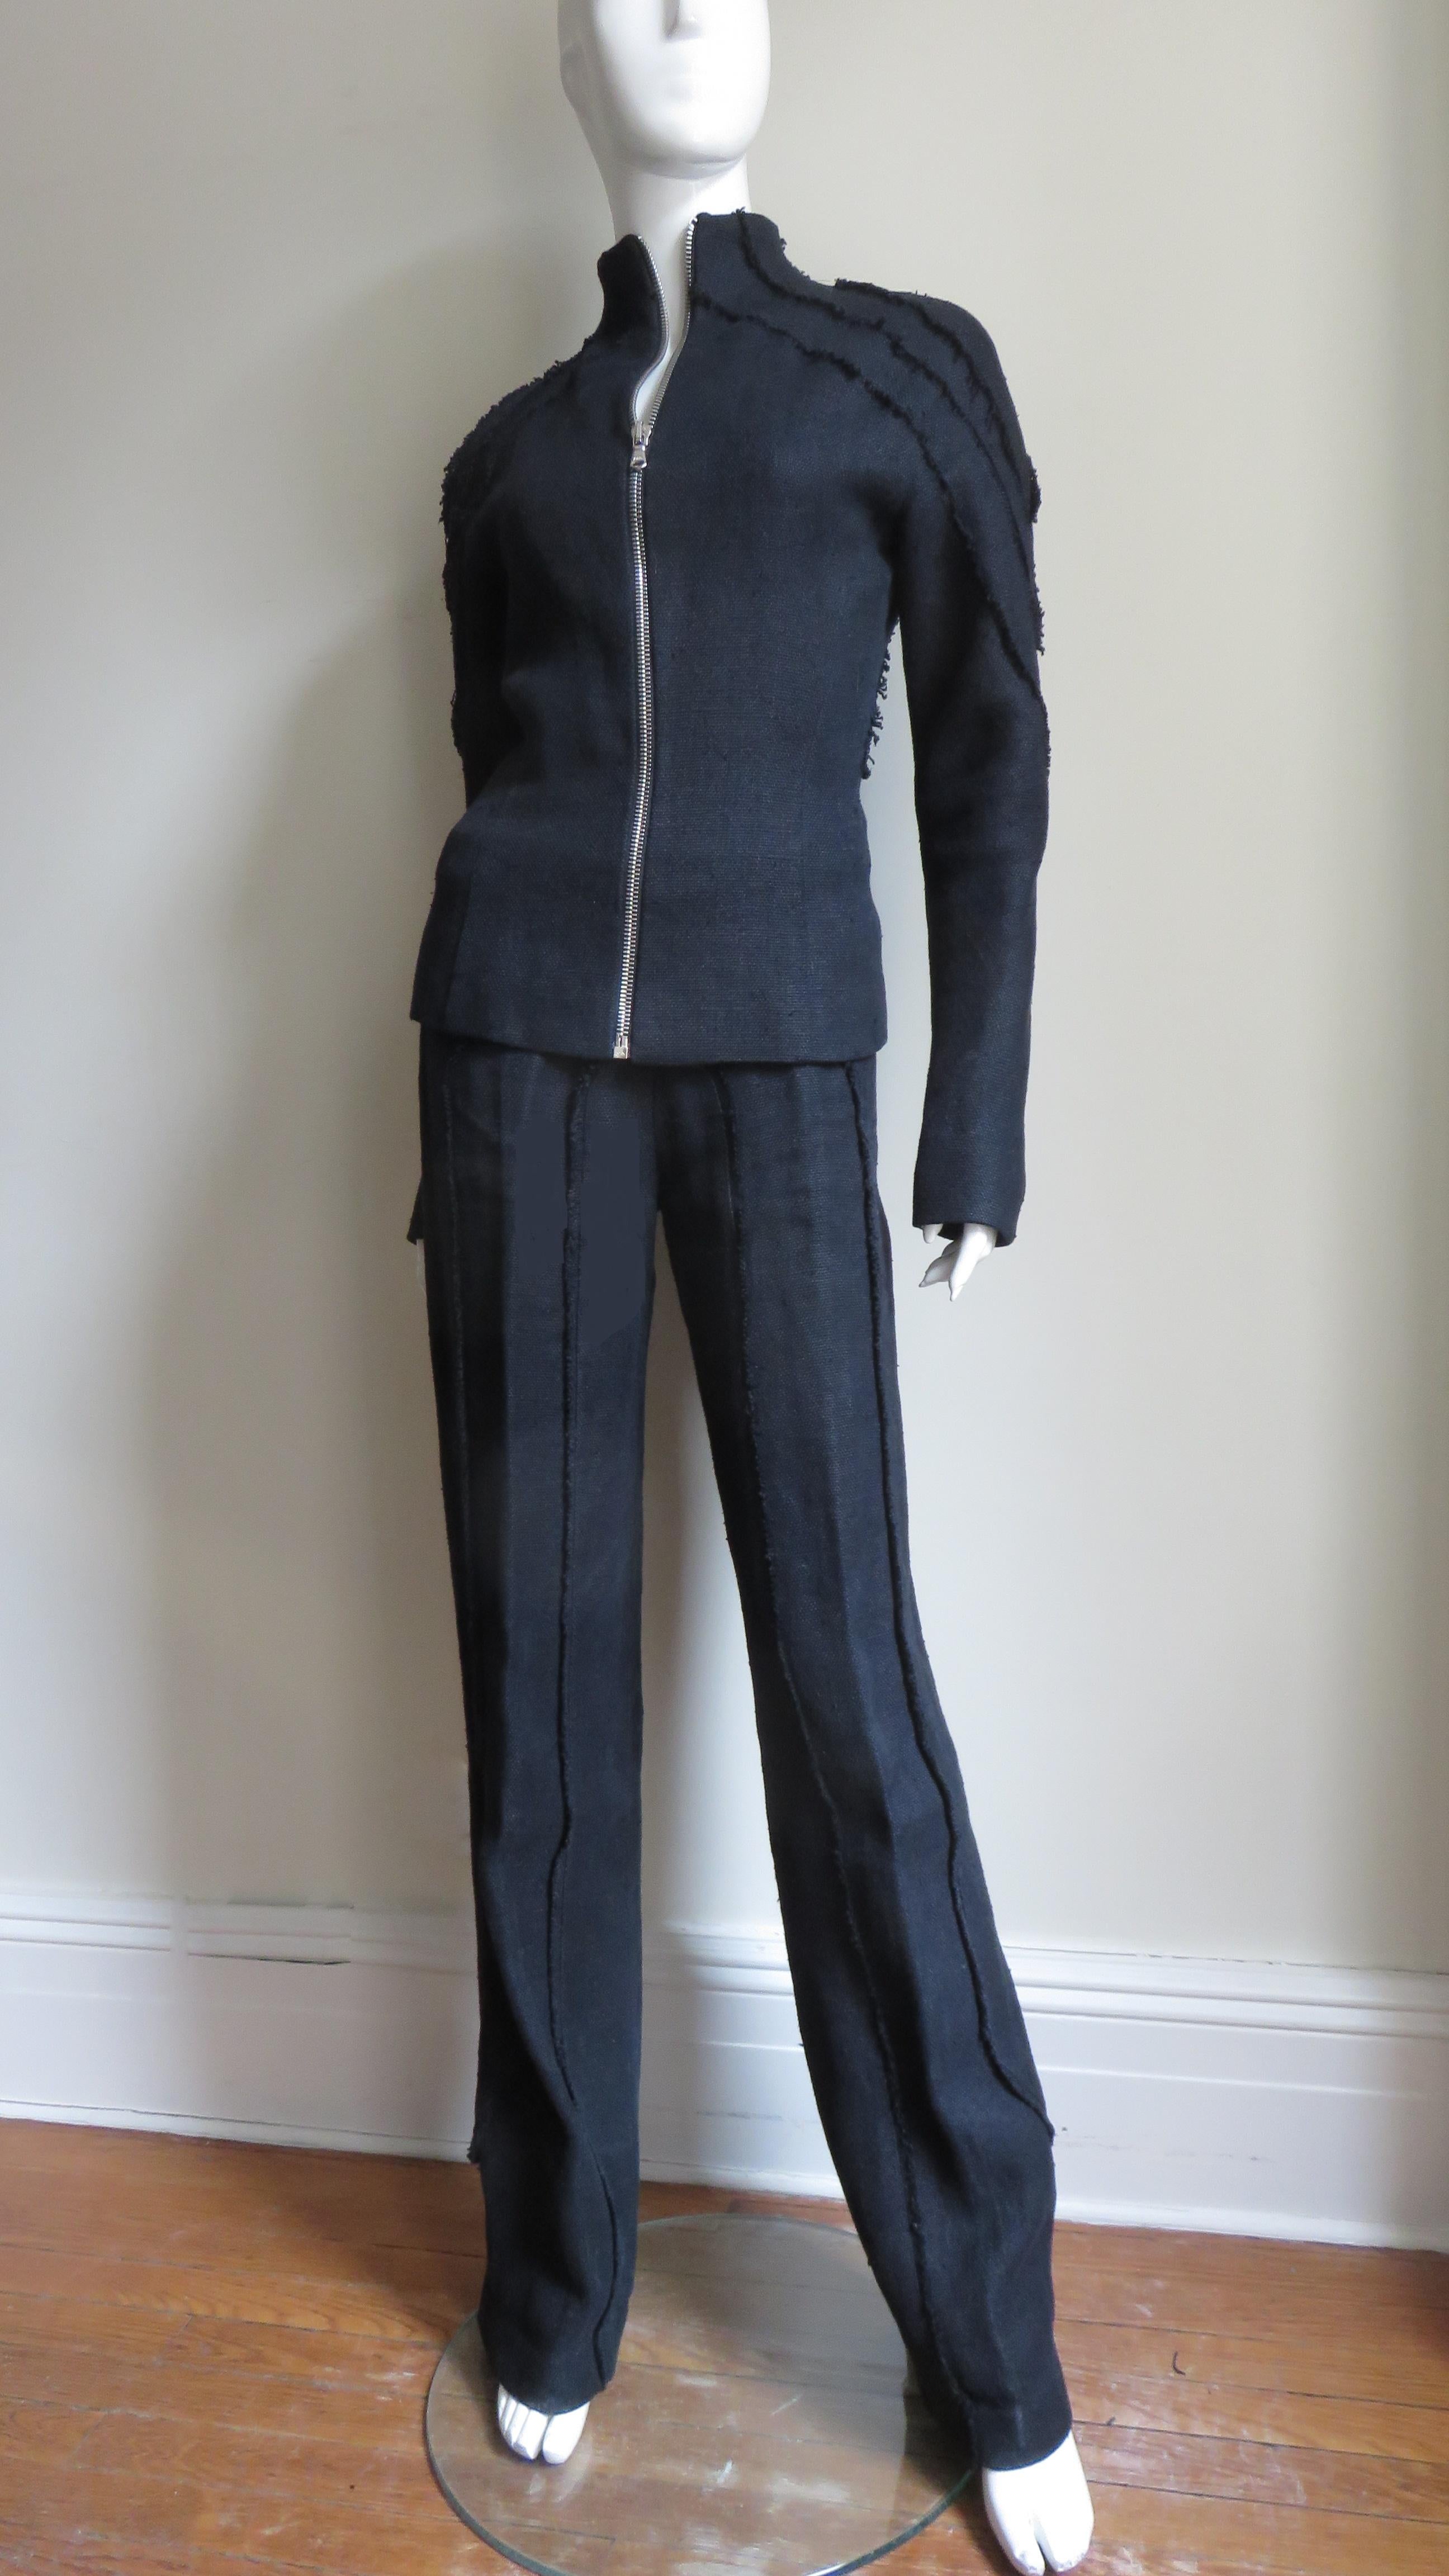 Eine unglaubliche mittelschwere schwarze Leinenjacke und Hose von Alexander McQueen. Die Jacke hat einen Stehkragen, lange Ärmel und ein aufwändiges Muster aus rauen Kanten entlang der Schultern, Ärmel und in schmeichelhaften Winkeln im Rücken.  Es